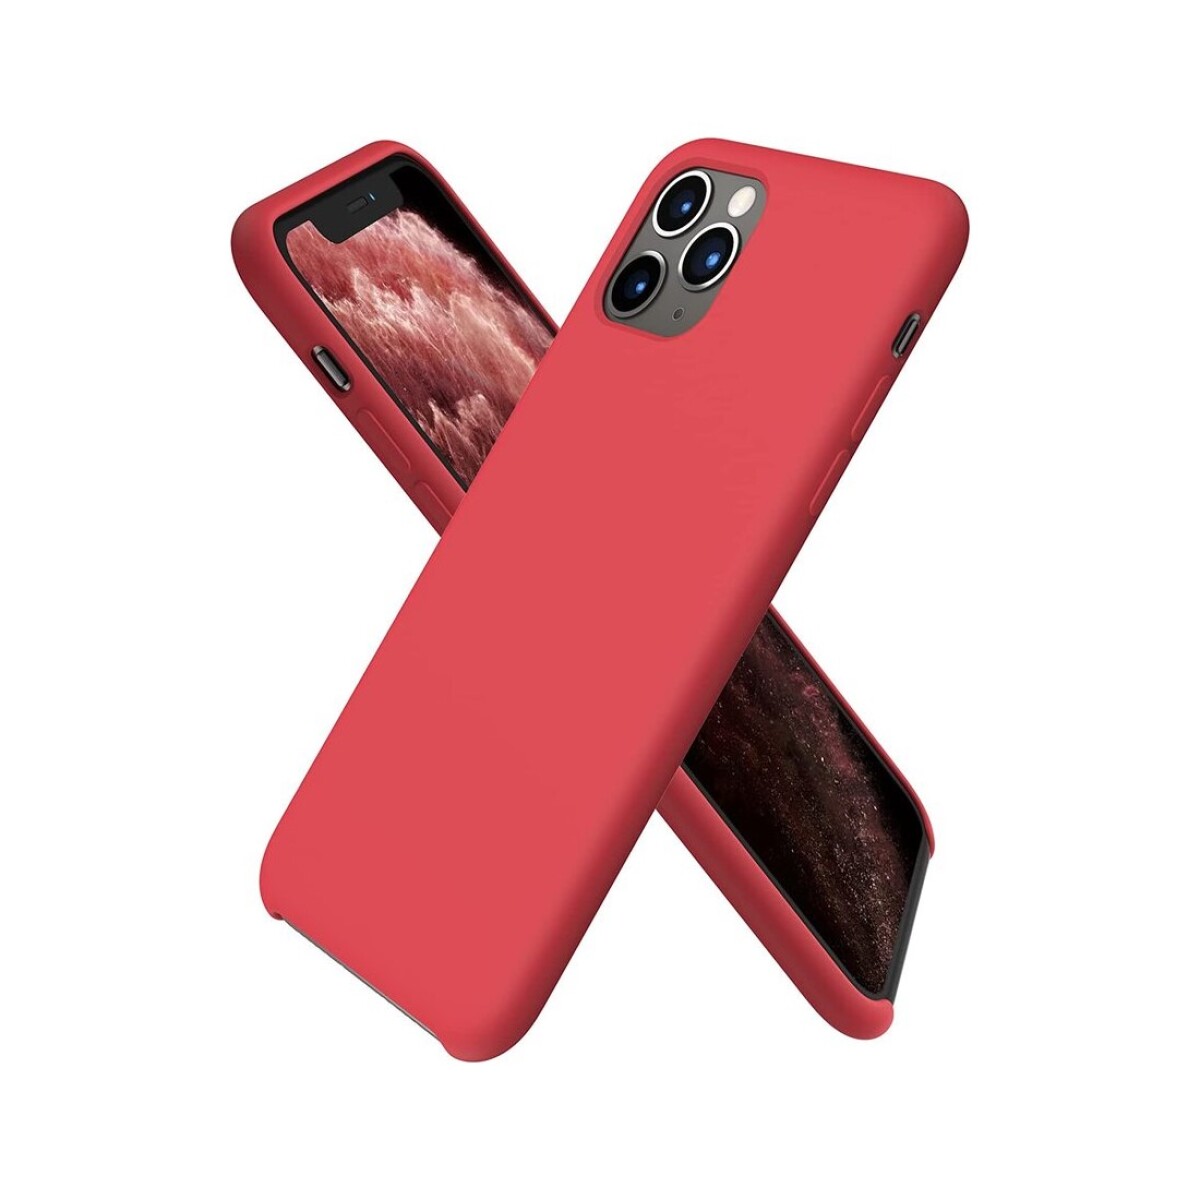 Protector case de silicona para iphone 11 pro Rojo